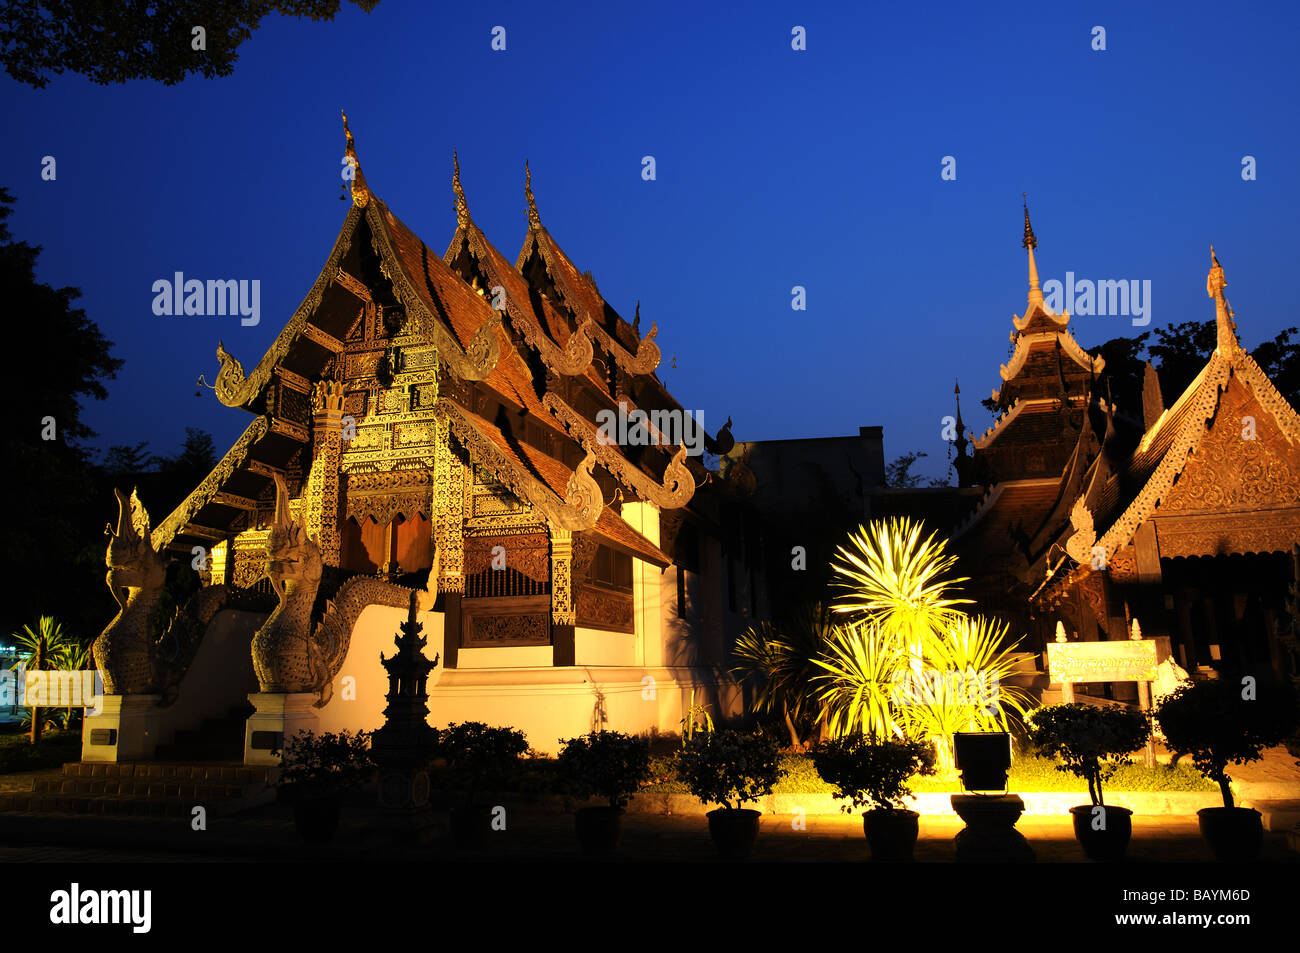 wat chedi luang chiangmai thailand Stock Photo